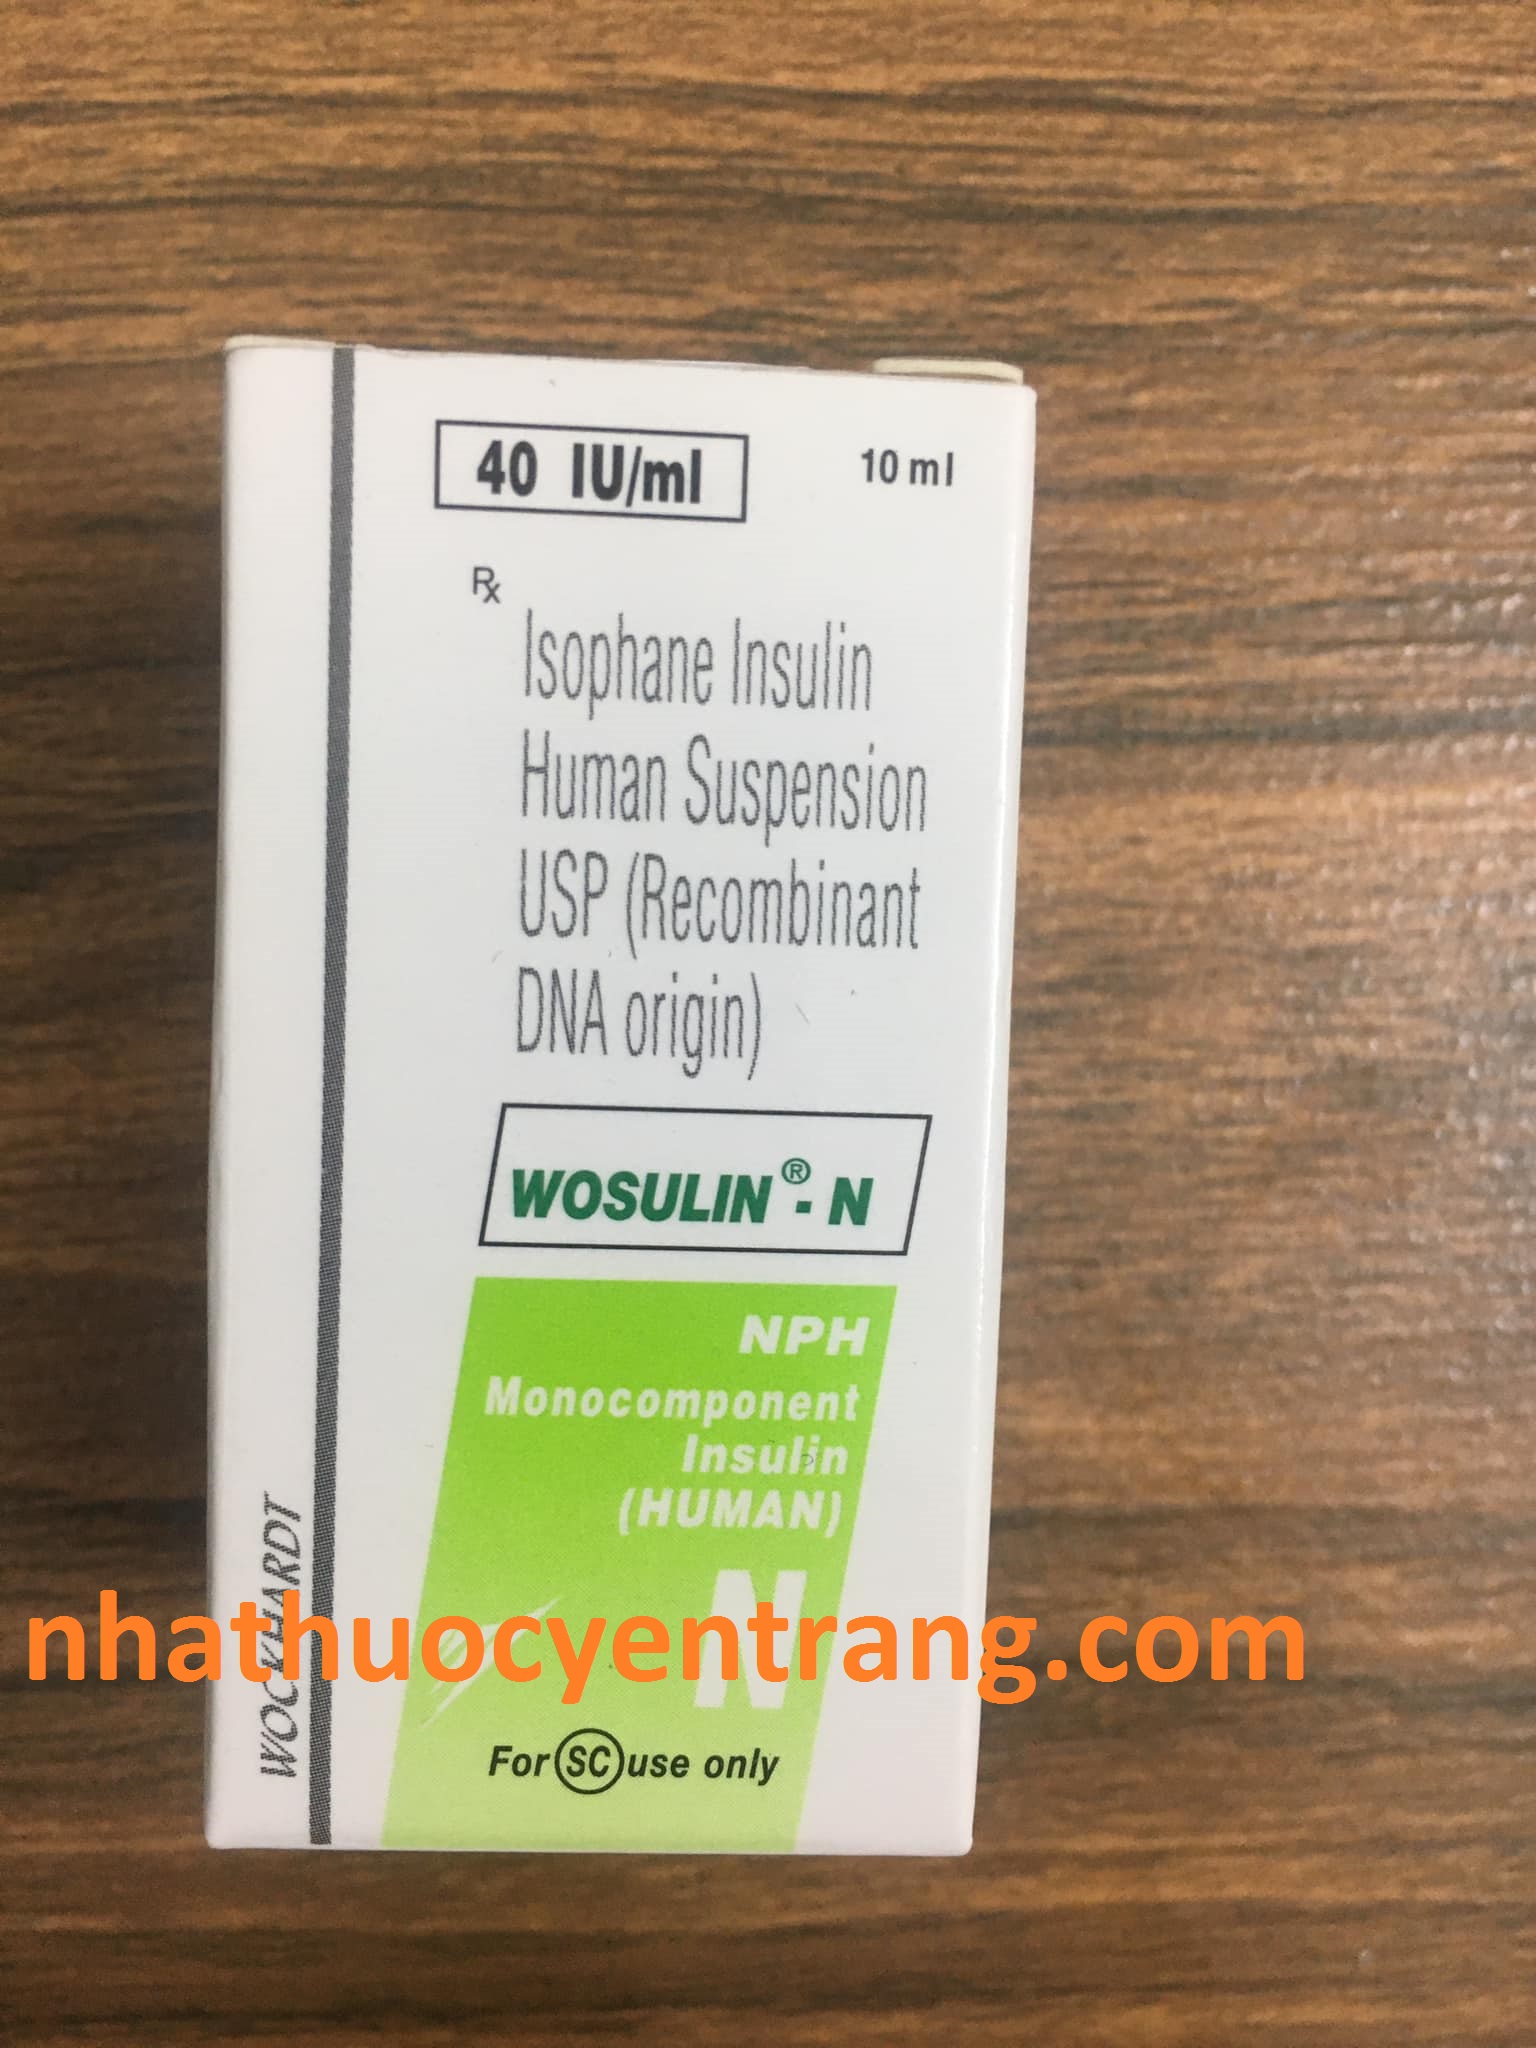 Wosulin N 40 IU/ml